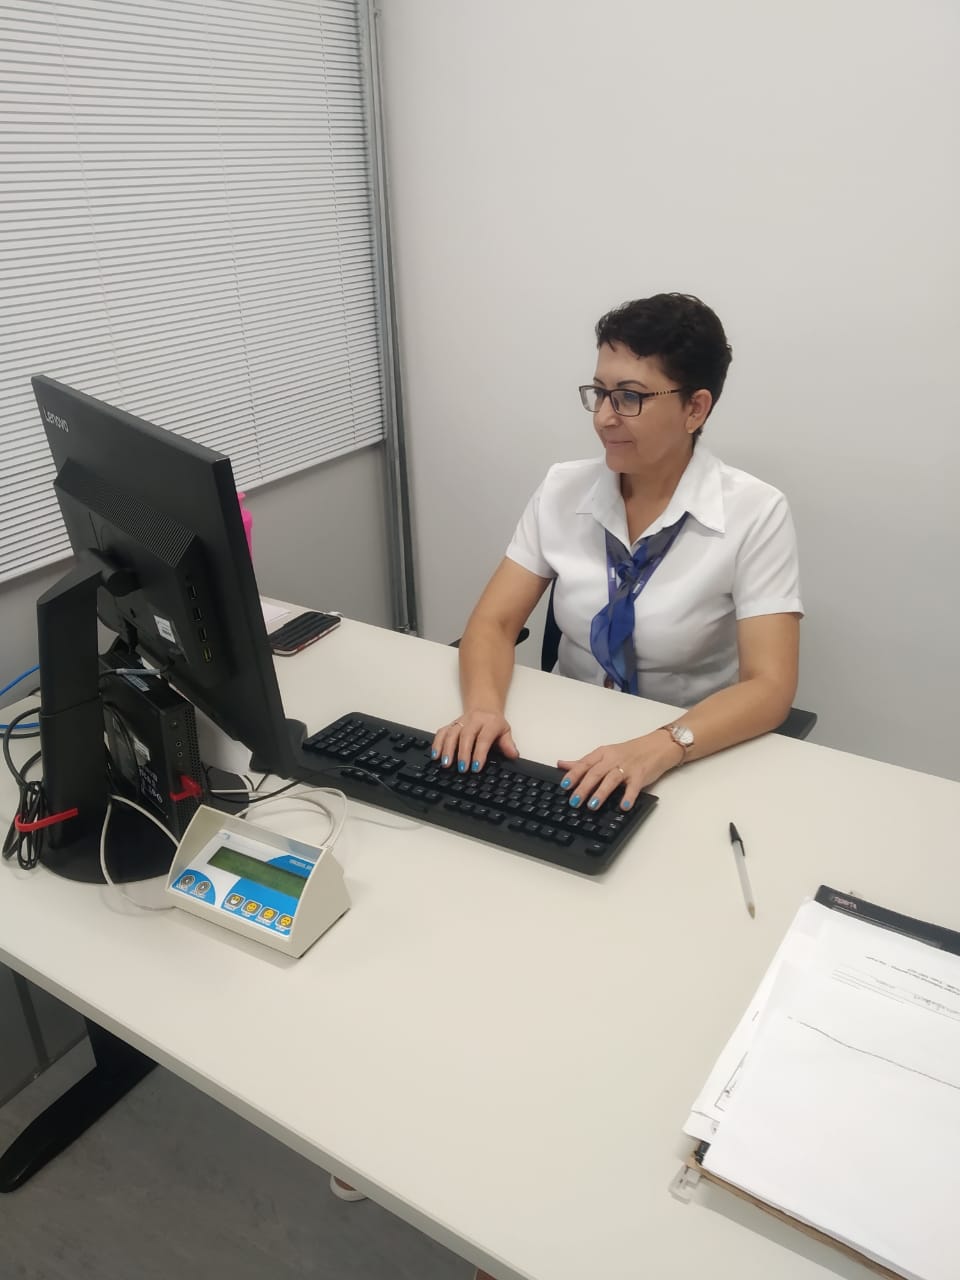 Mulher sentada olha para a tela do computador com suas mãos apoiadas no teclado da mesa.